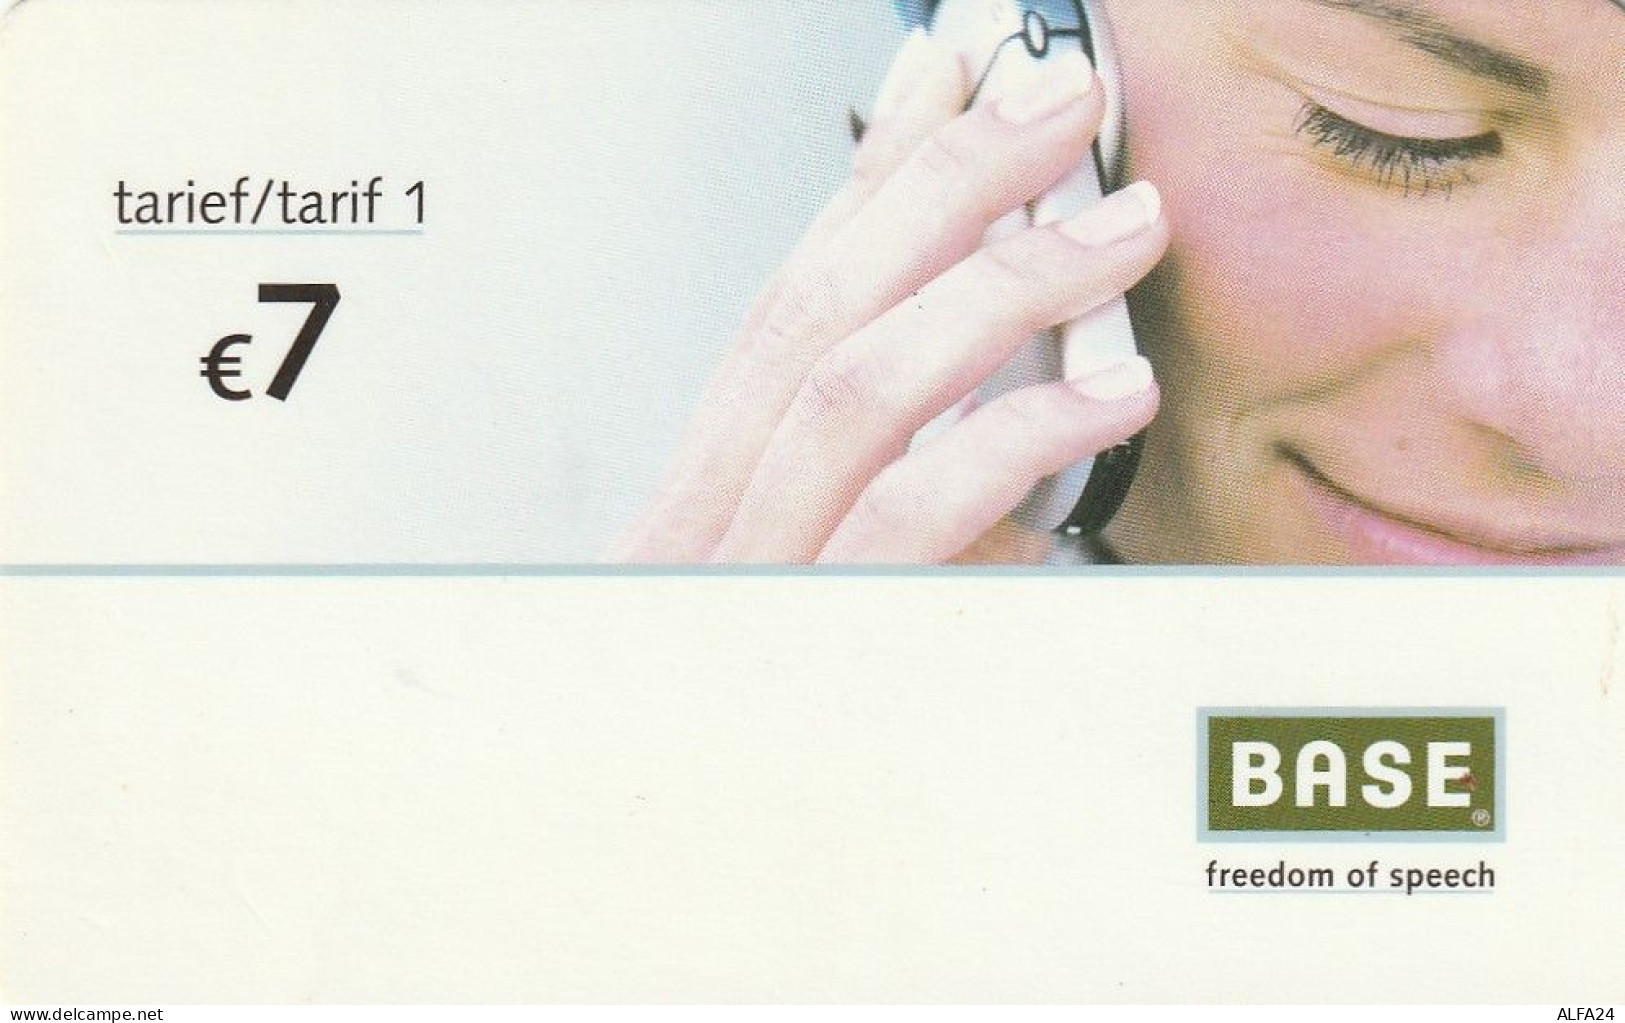 PREPAID PHONE CARD PAESI BASSI   (CV3192 - Cartes GSM, Prépayées Et Recharges